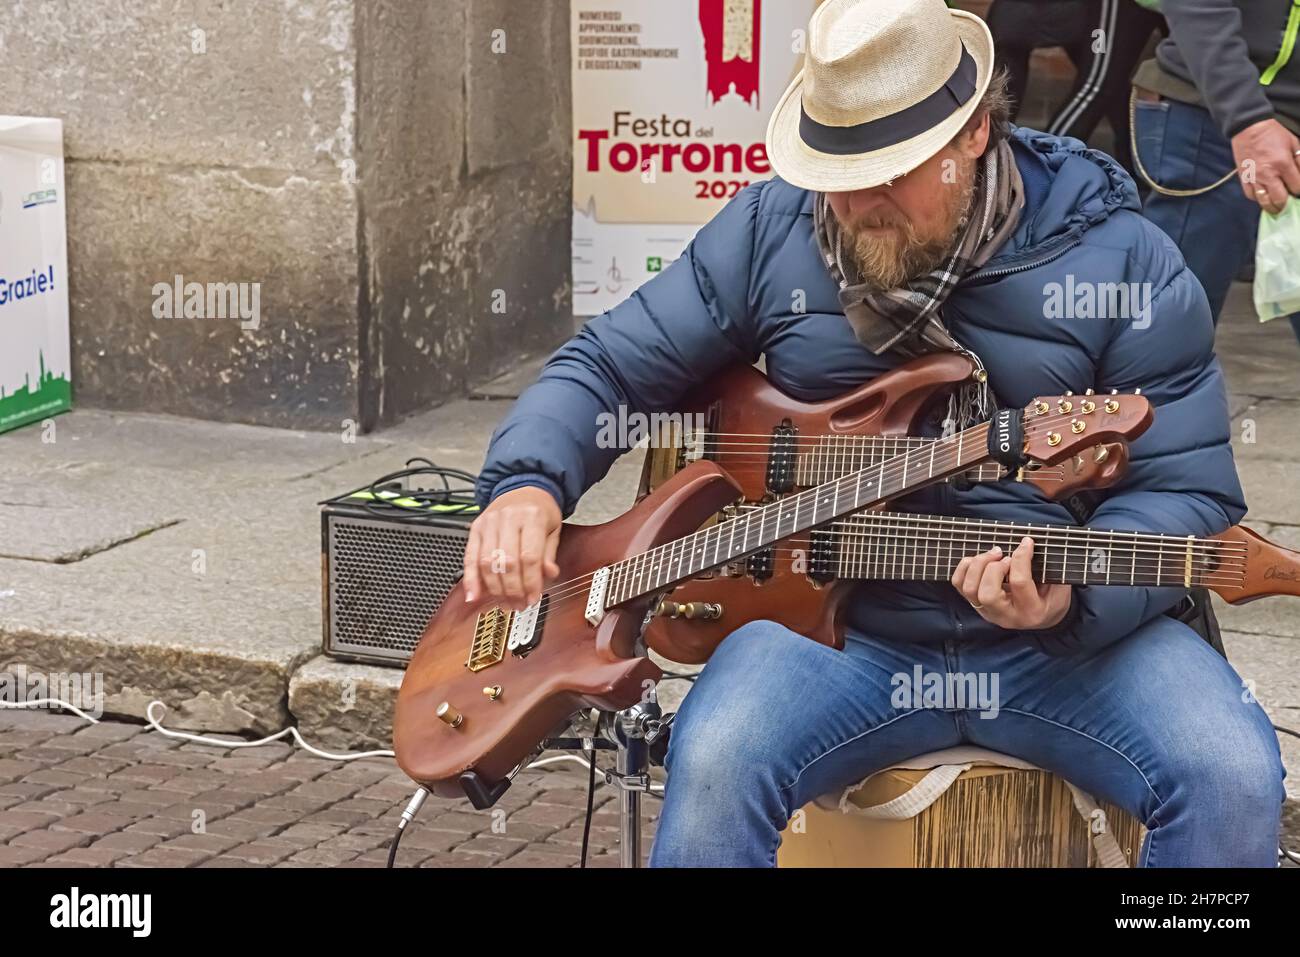 cremona festa del torrone artista di strada che suona due chitarre Stock Photo